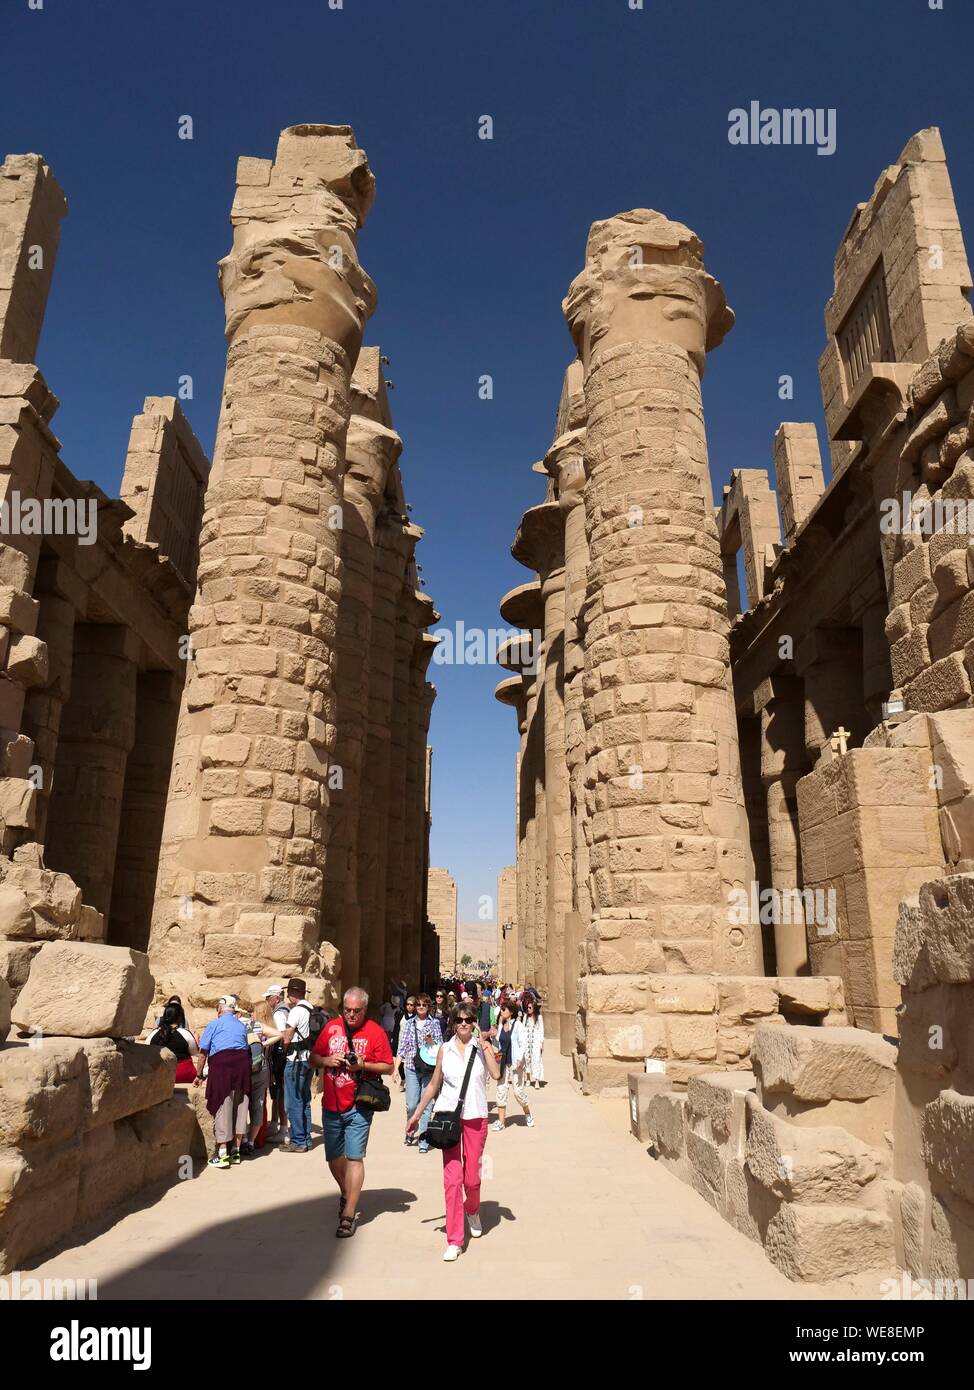 Ägypten, Ägypten, das Niltal, Luxor, Karnak, UNESCO-Weltkulturerbe, Tempel, der dem Gott Amun, die große hypostyle Halle eingeweiht Stockfoto